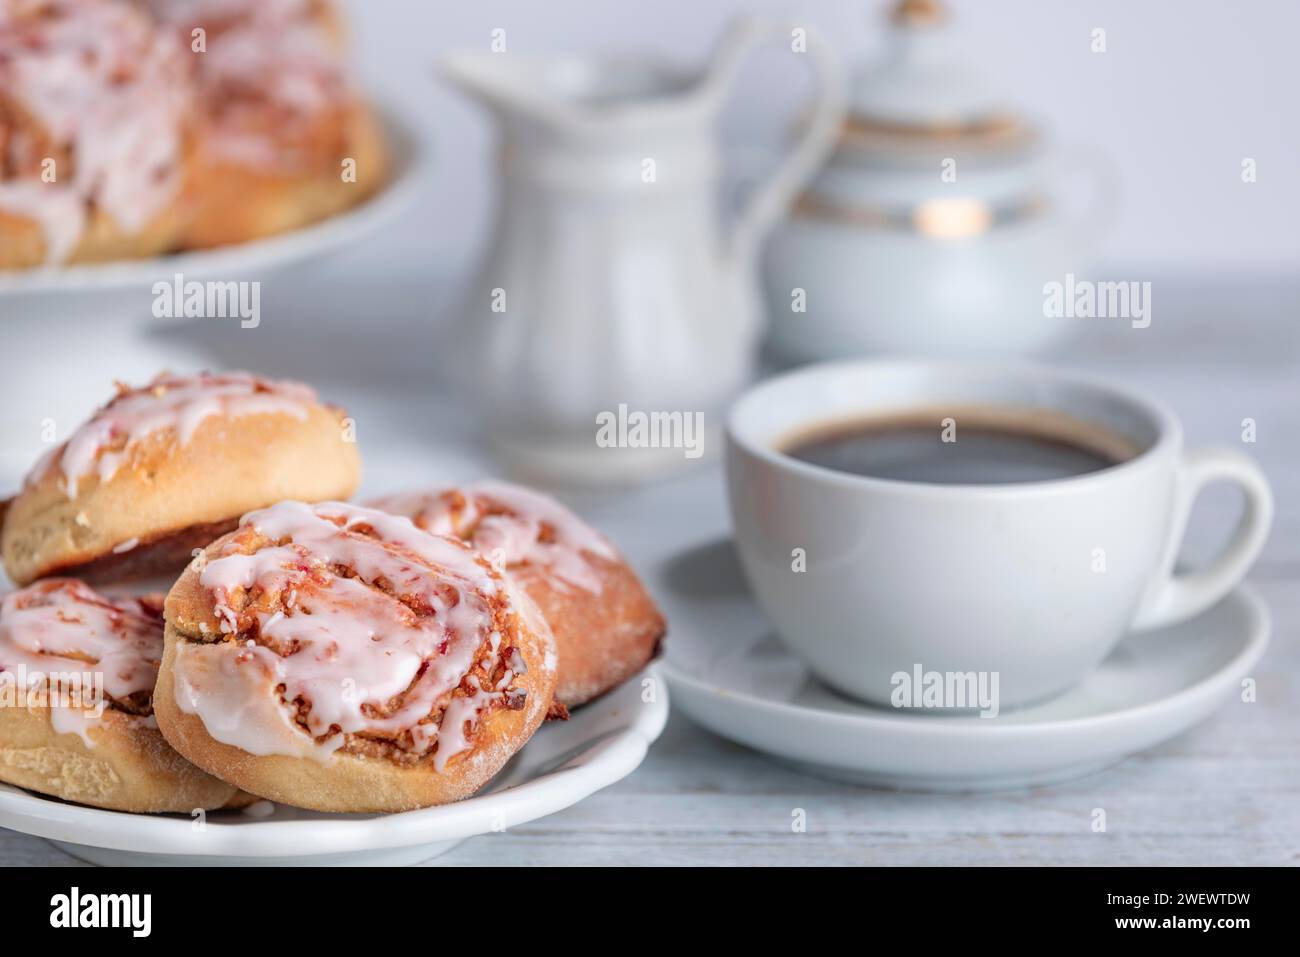 Pausa caffè con panini alla cannella accanto a una tazza di caffè, brocca per la panna e ciotola per lo zucchero sullo sfondo Foto Stock